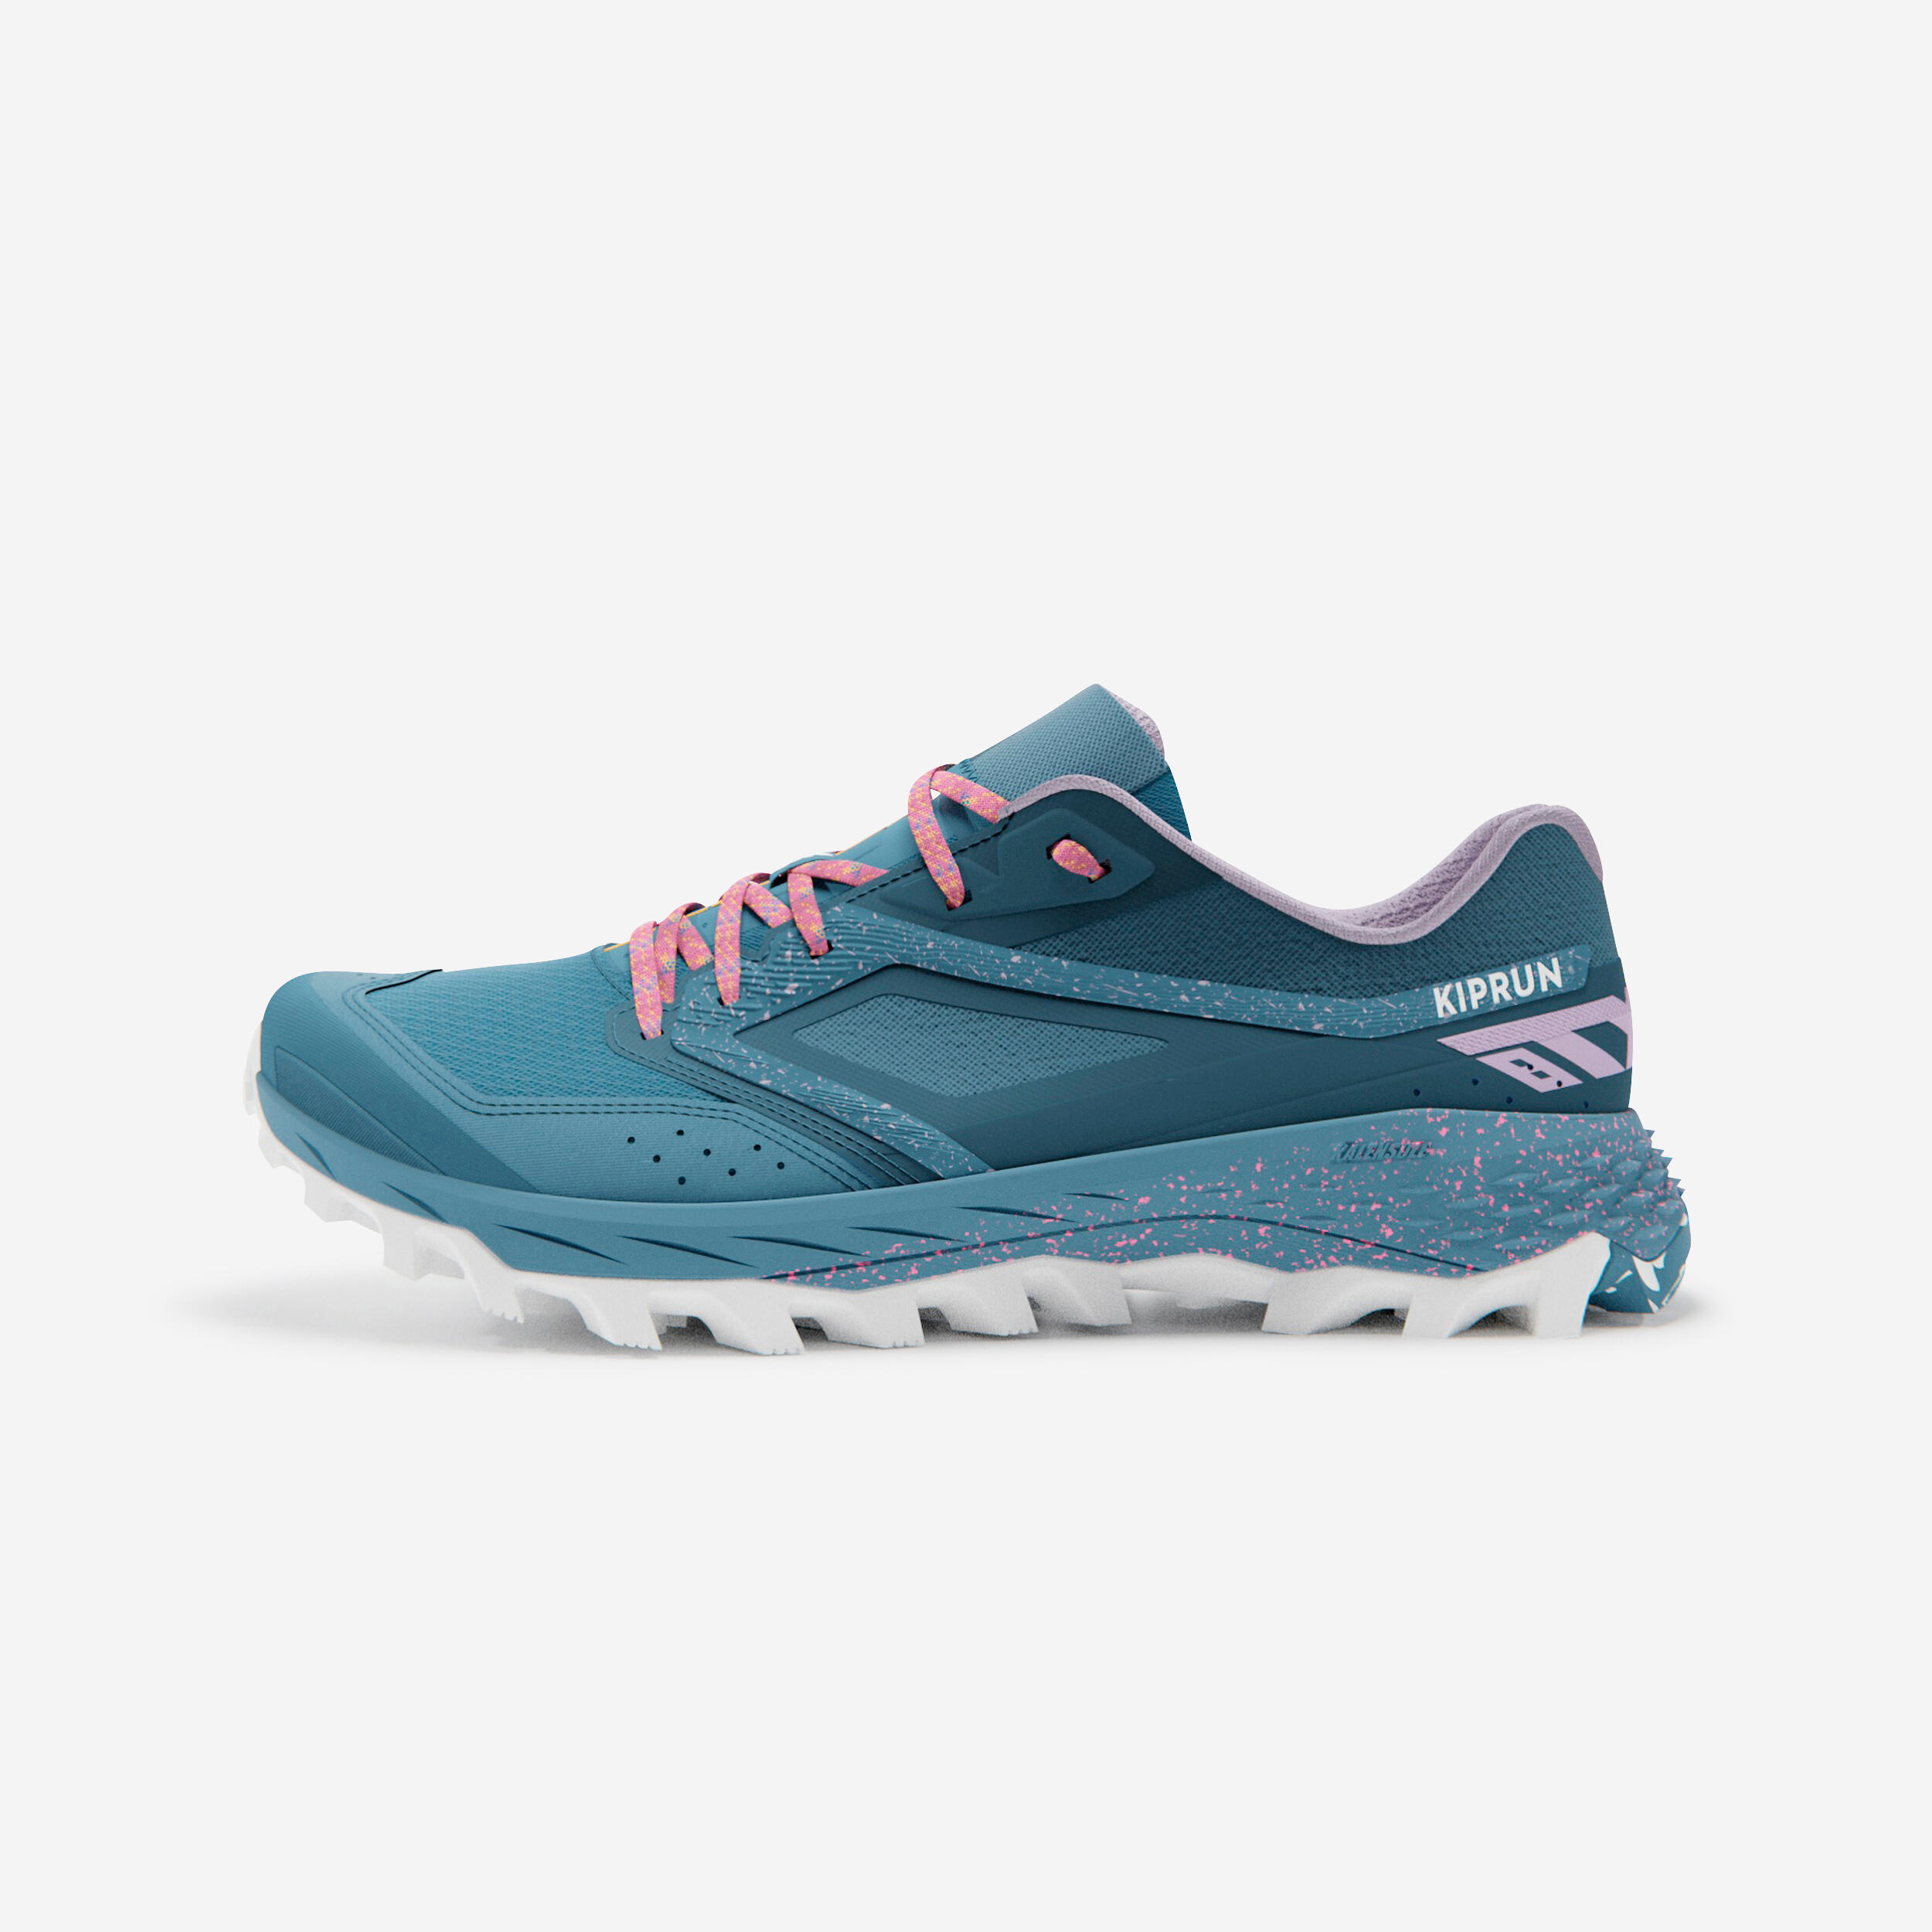 chaussures de trail running pour femme xt8 turquoise - evadict